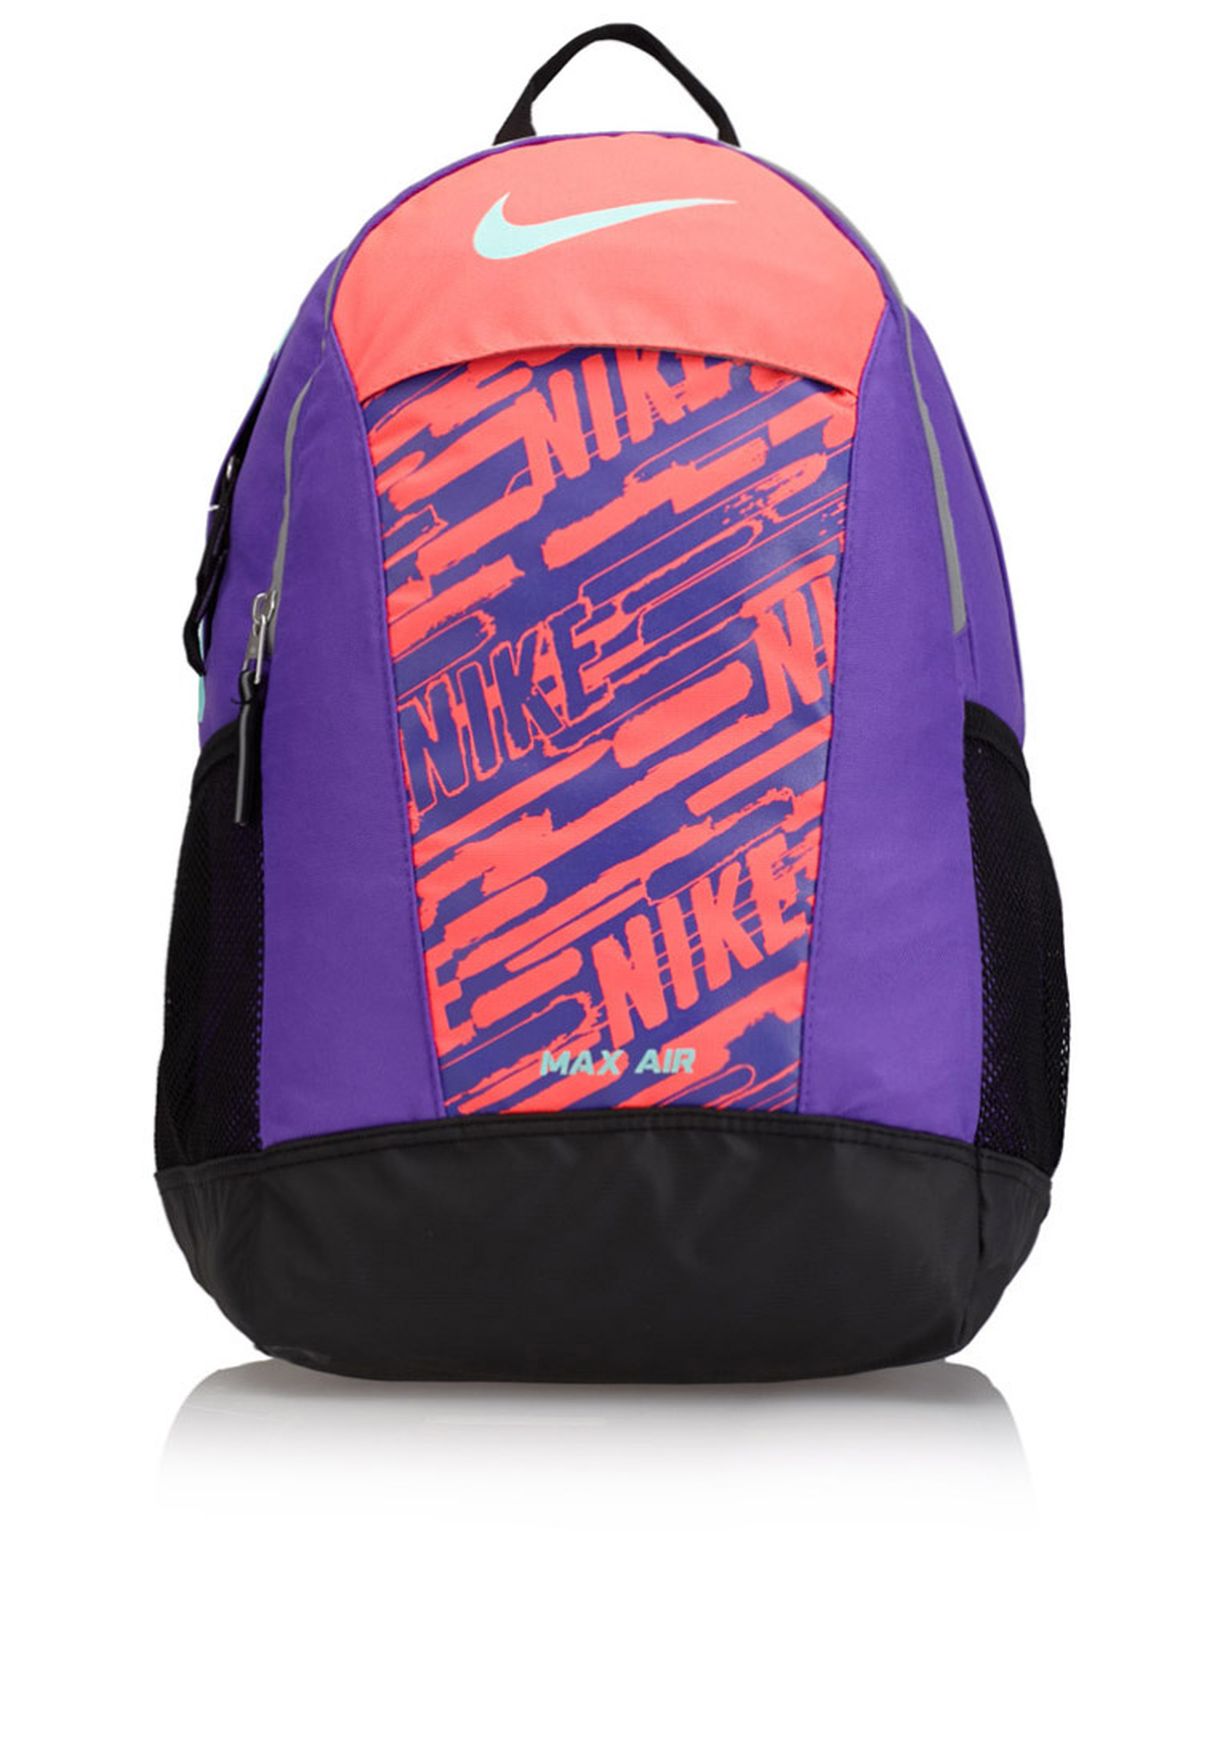 nike max air backpack purple